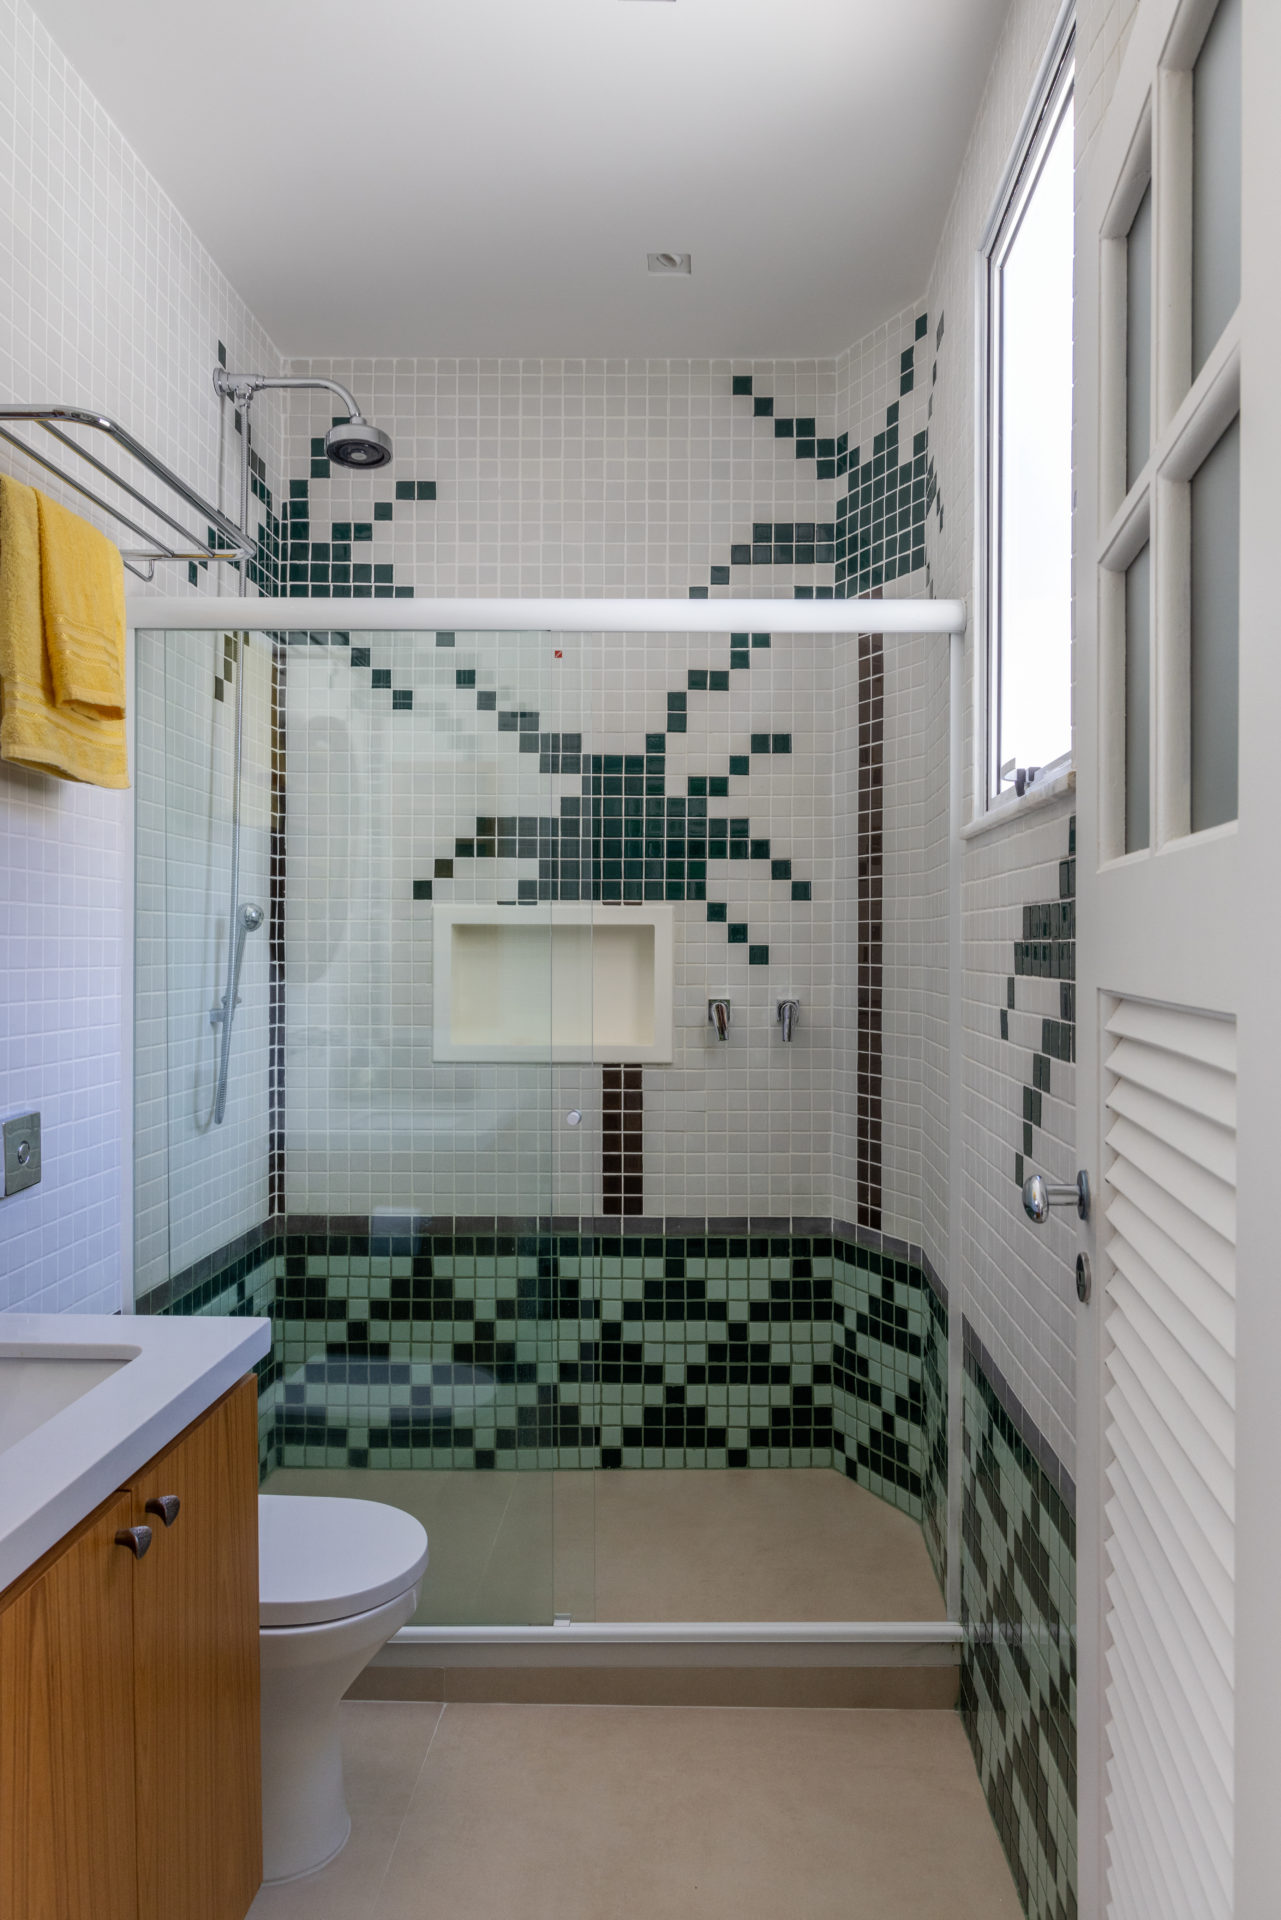 Banheiro revestido com pastilhas brancas e tons de verde, que formam desenhos de palmeiras